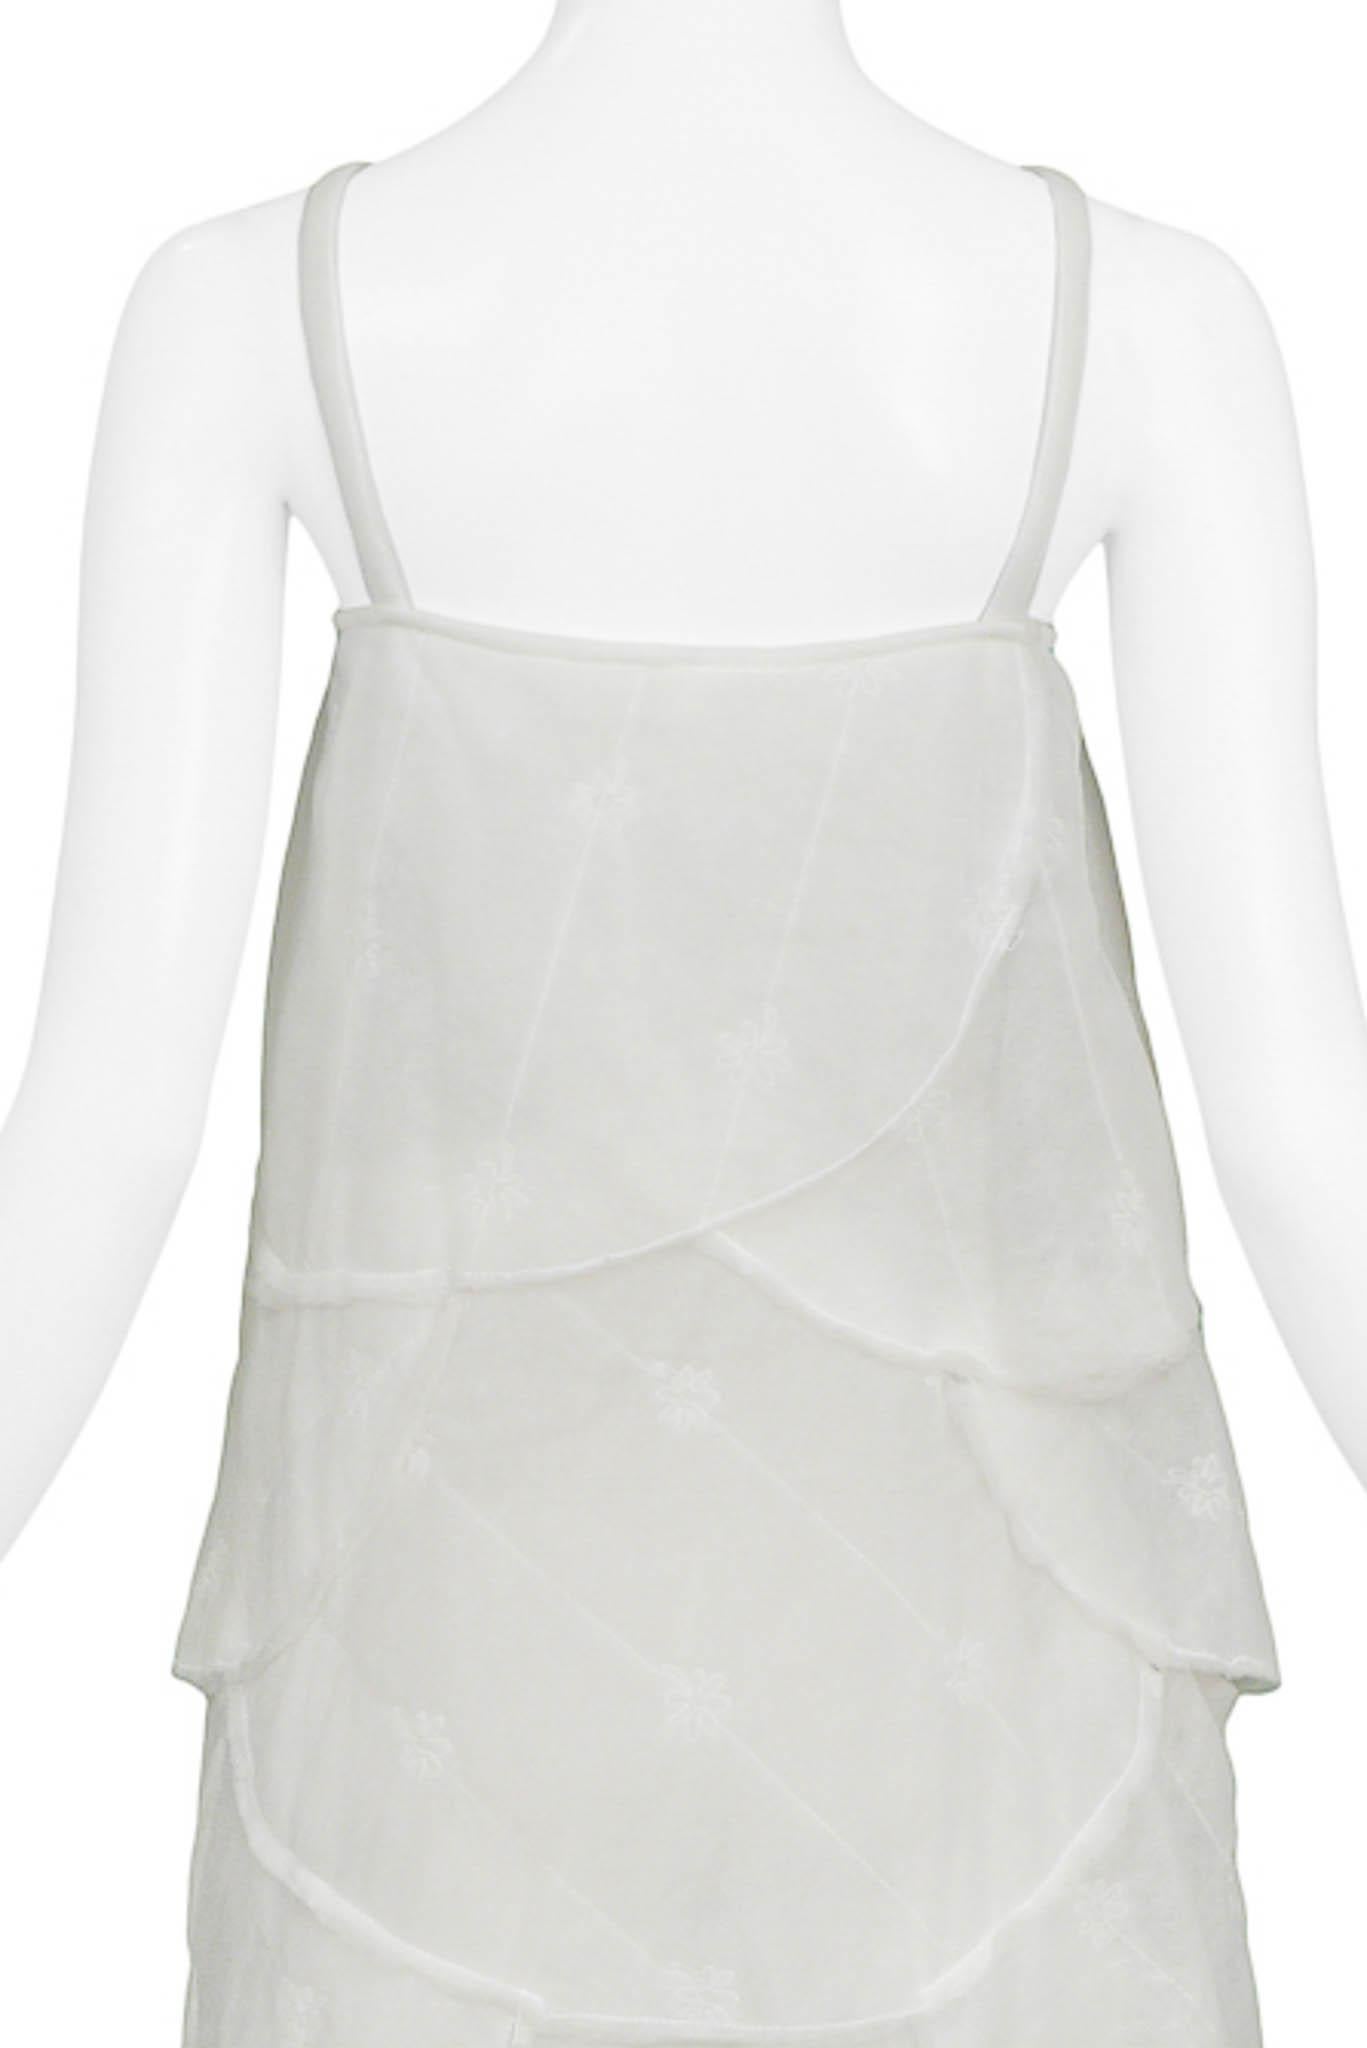 Women's Walter Van Beirendonck White Padded Batting Dress 1999 For Sale